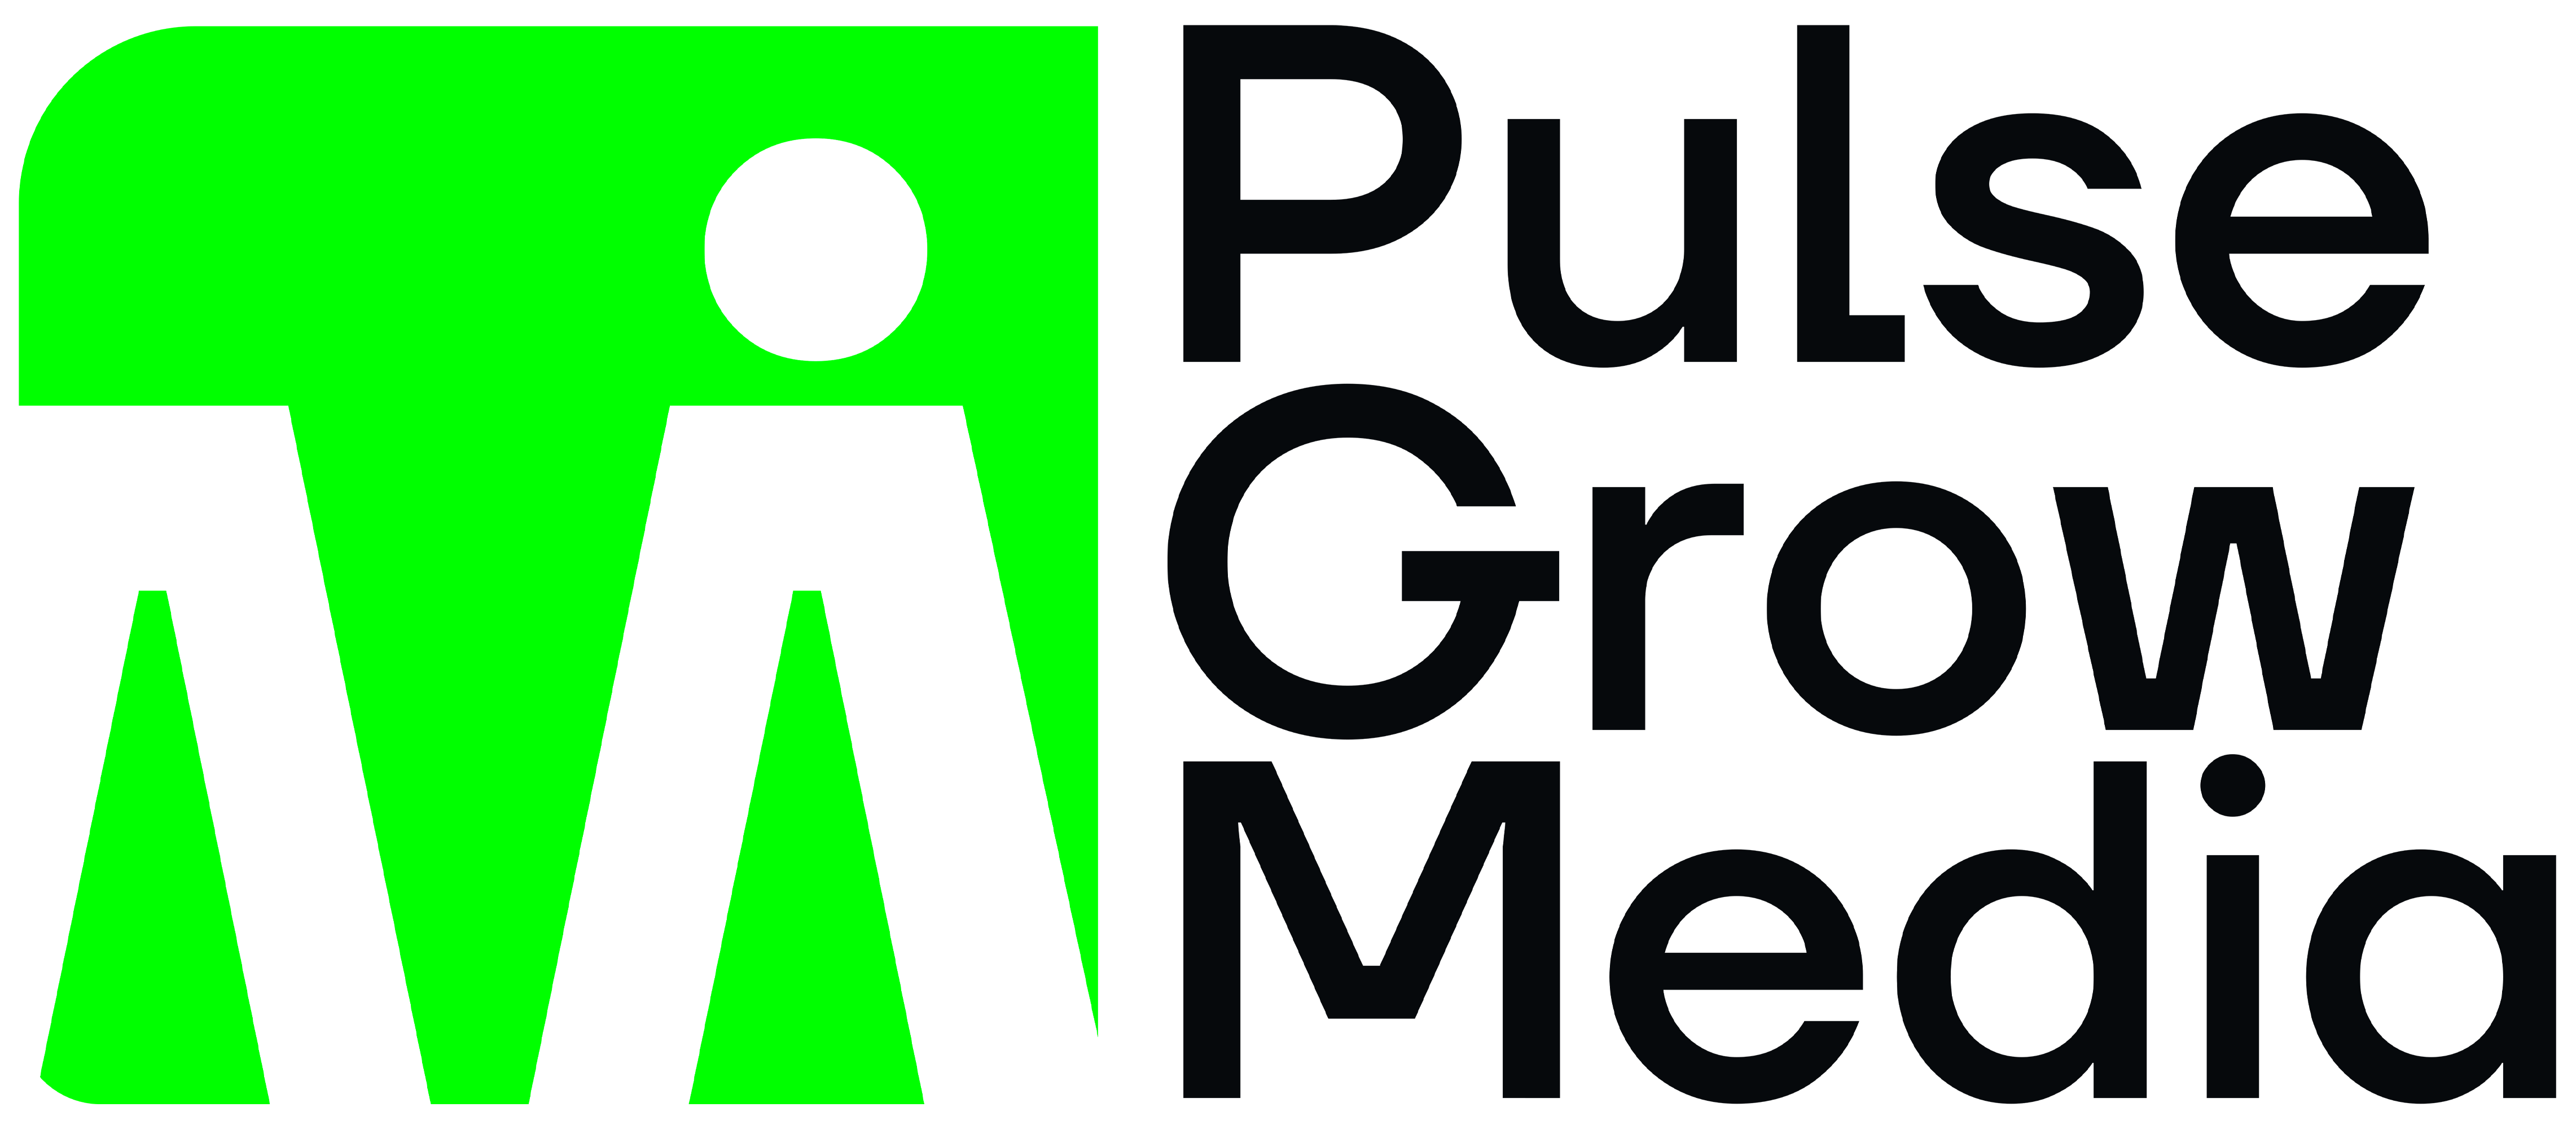 Pulse Grow Media Agencia